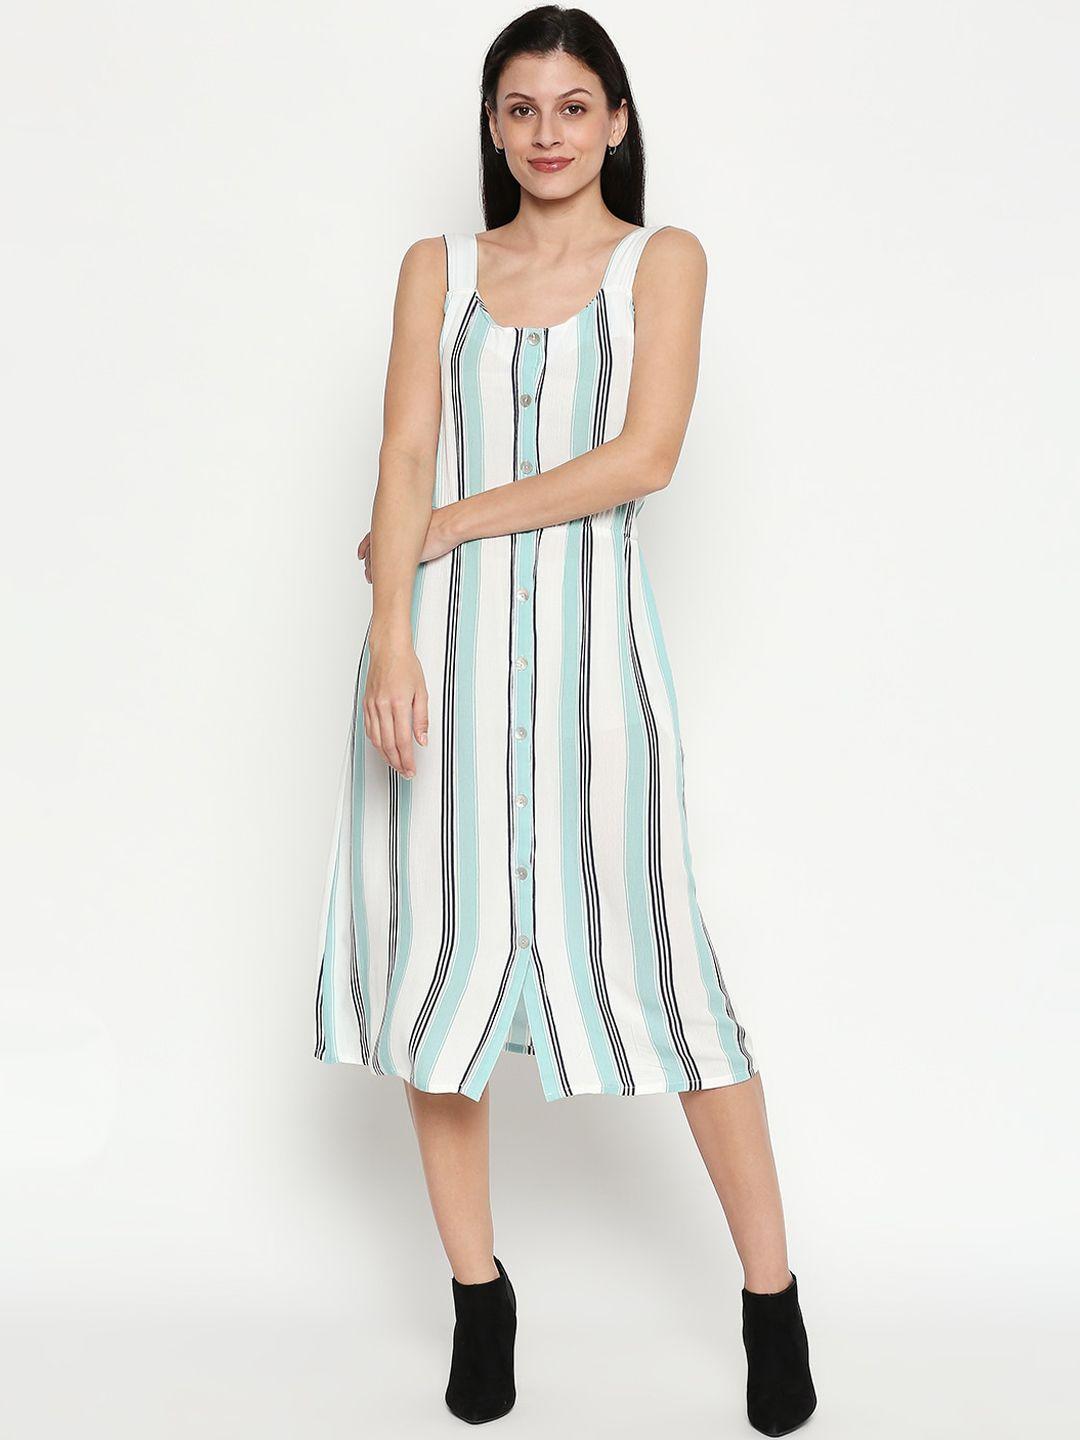 honey-by-pantaloons-women-white-striped-a-line-dress